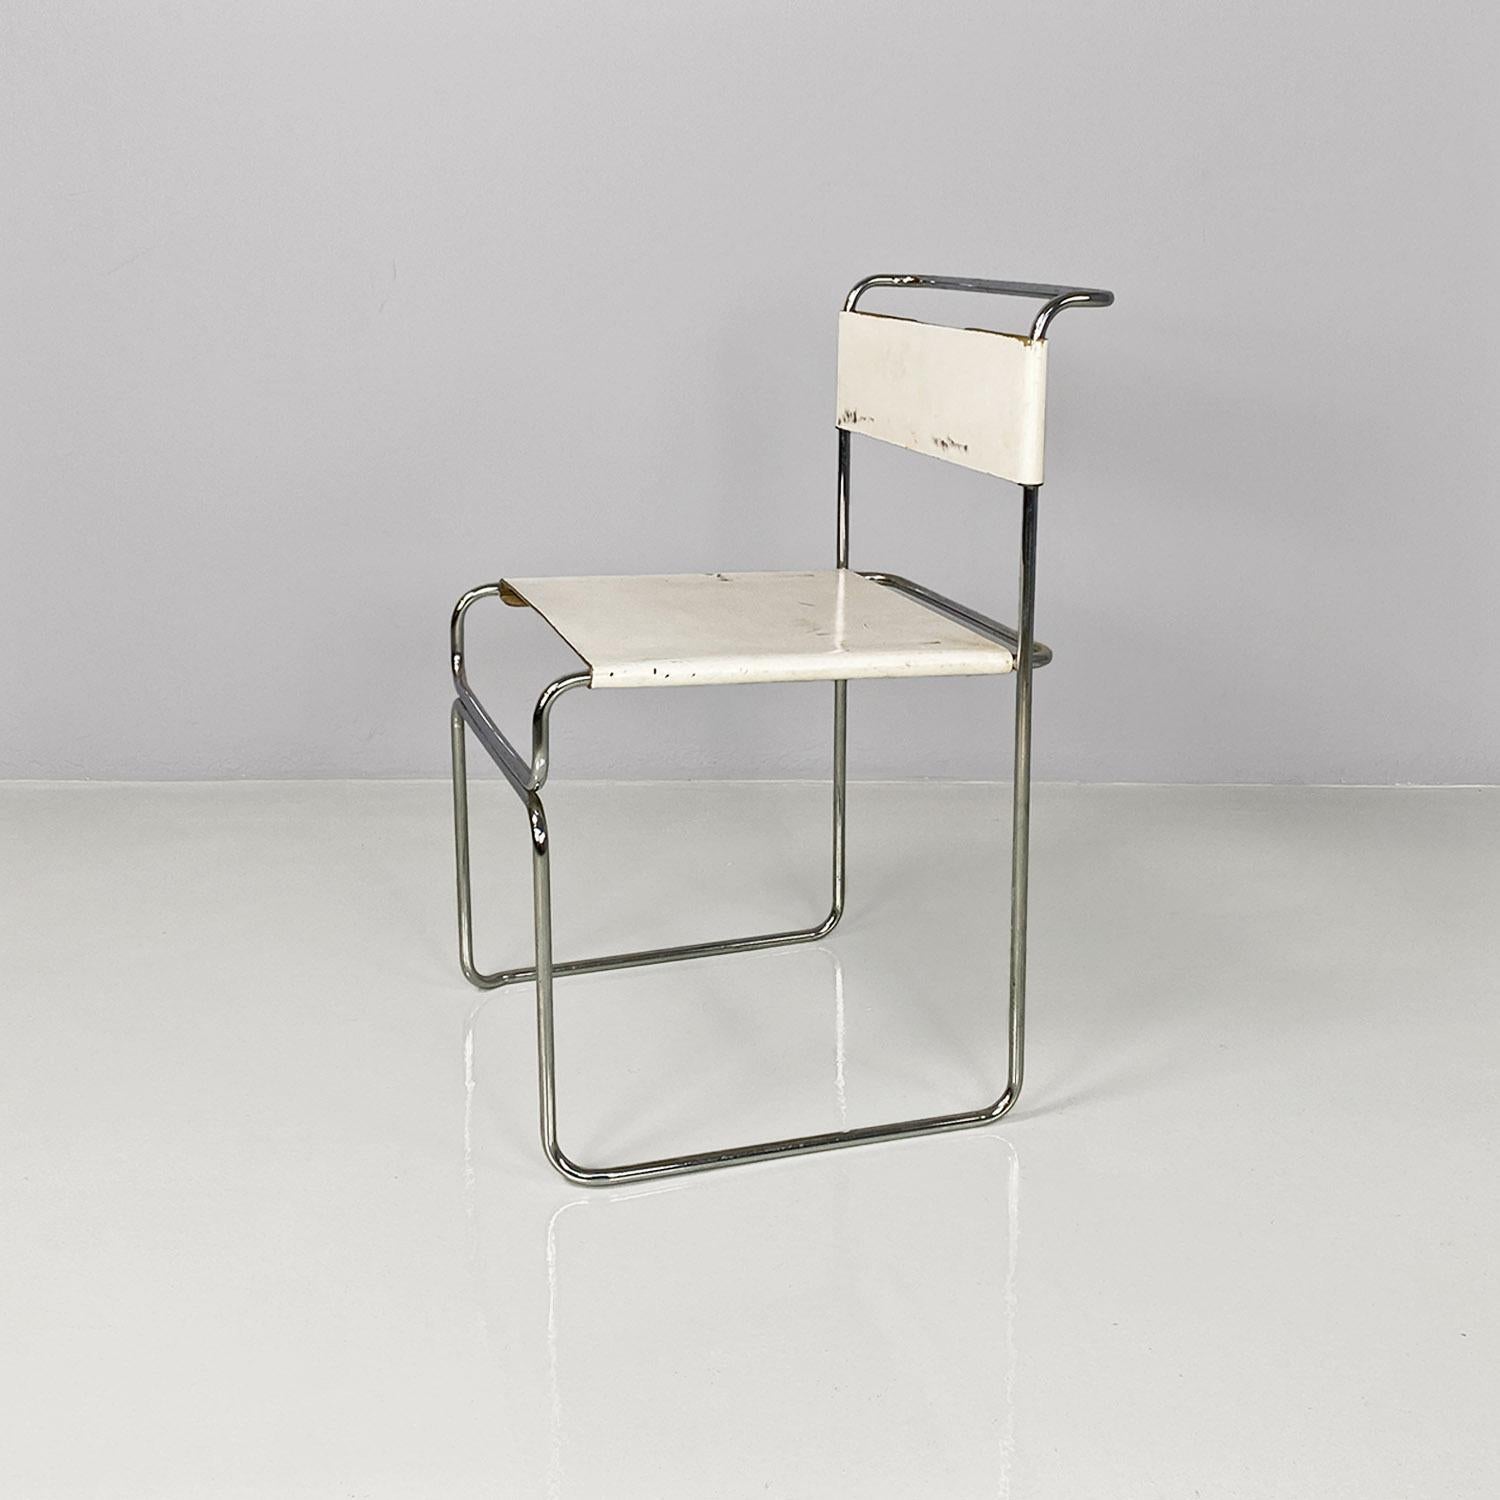 Chaise moderne italienne en métal chromé et cuir blanc Libellula conçue par Giovanni Carini et produite par Planula dans les années 1970.
Chaise modèle Libellula, empilable, avec structure en tiges métalliques, assise et dossier en cuir